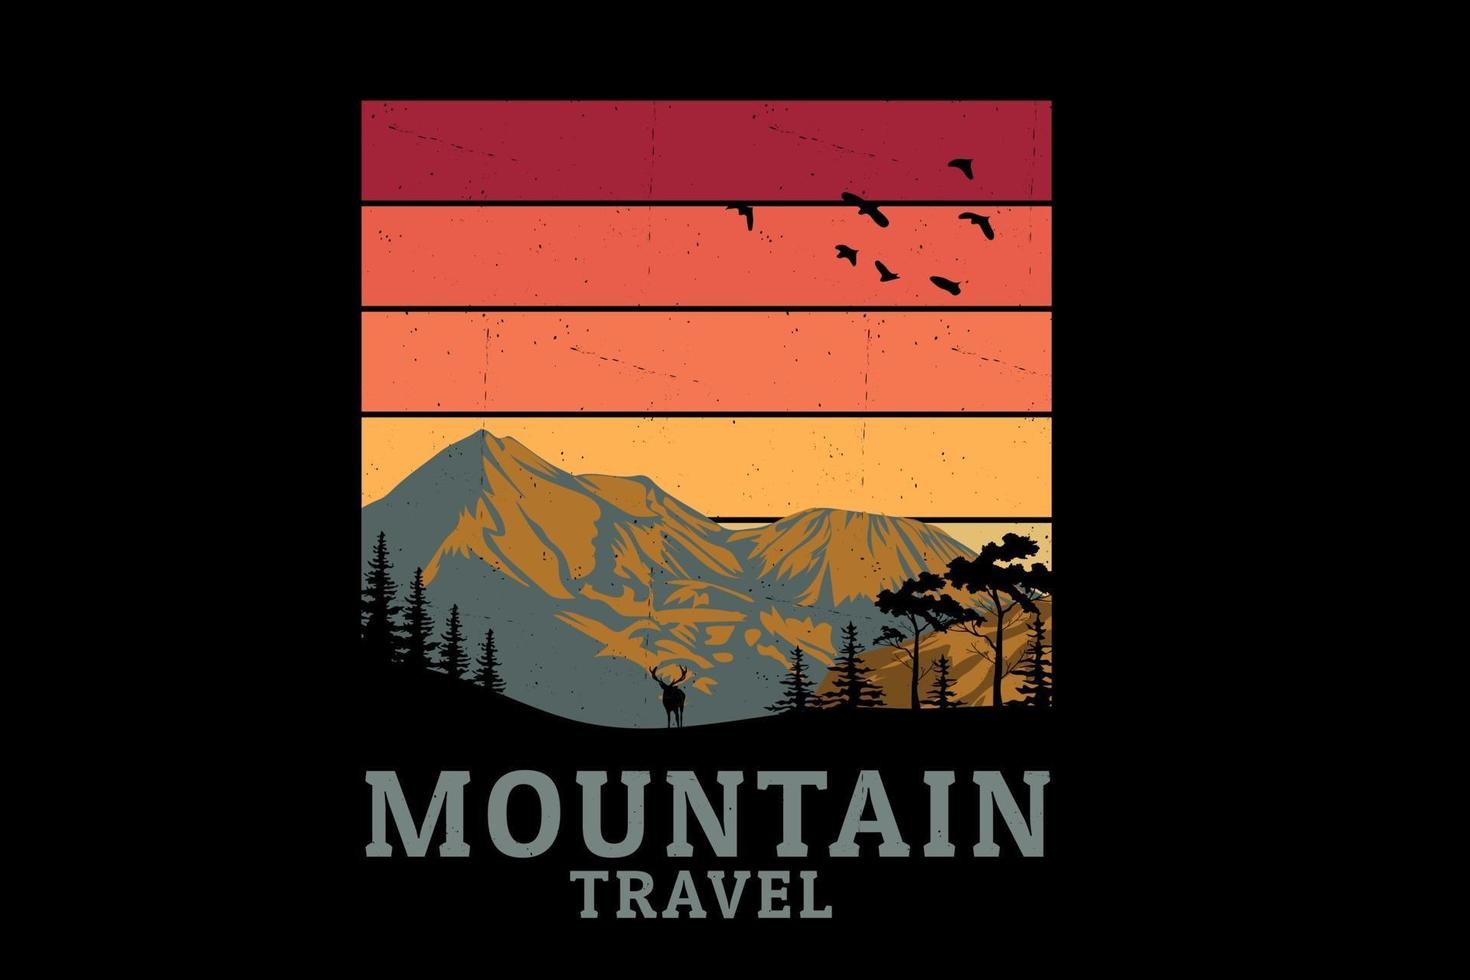 Mountain travel silhouette design vector